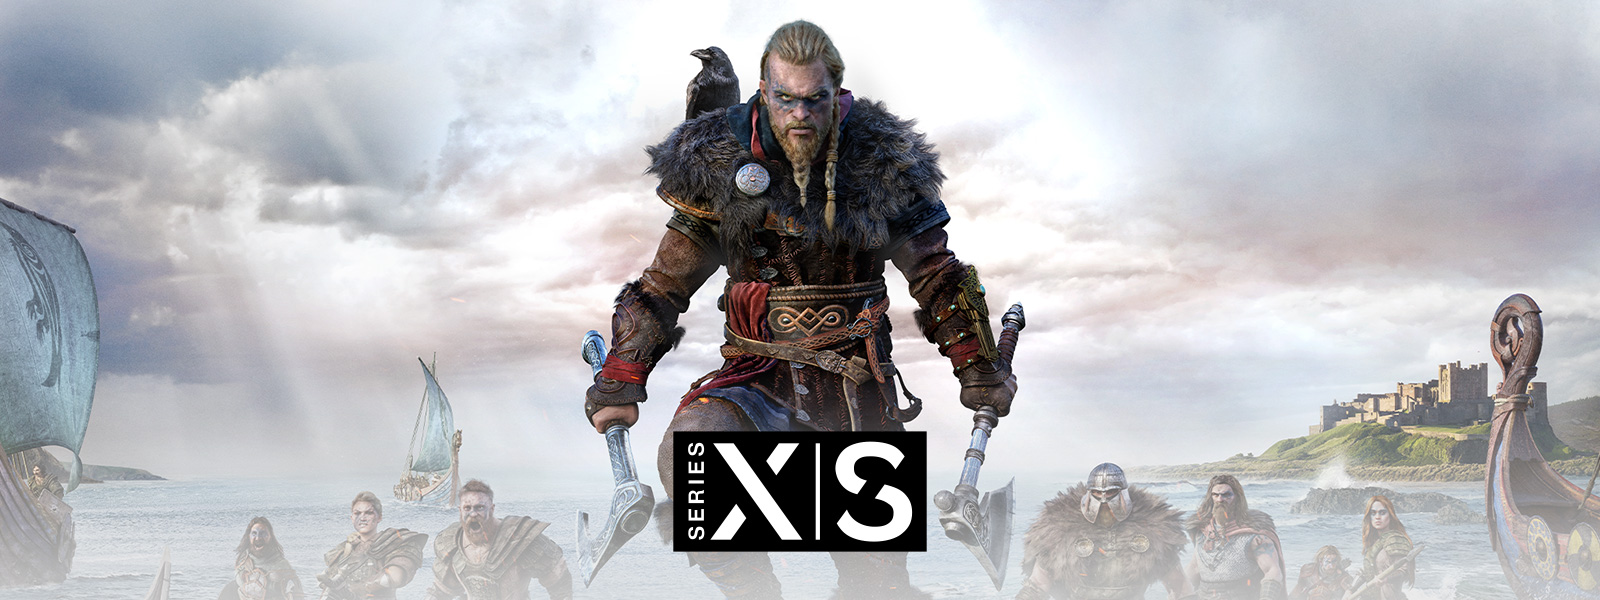 Assassin's Creed Valhalla, Xbox Series X|S, legendární Viking Eivor vede svou armádu do bitvy.